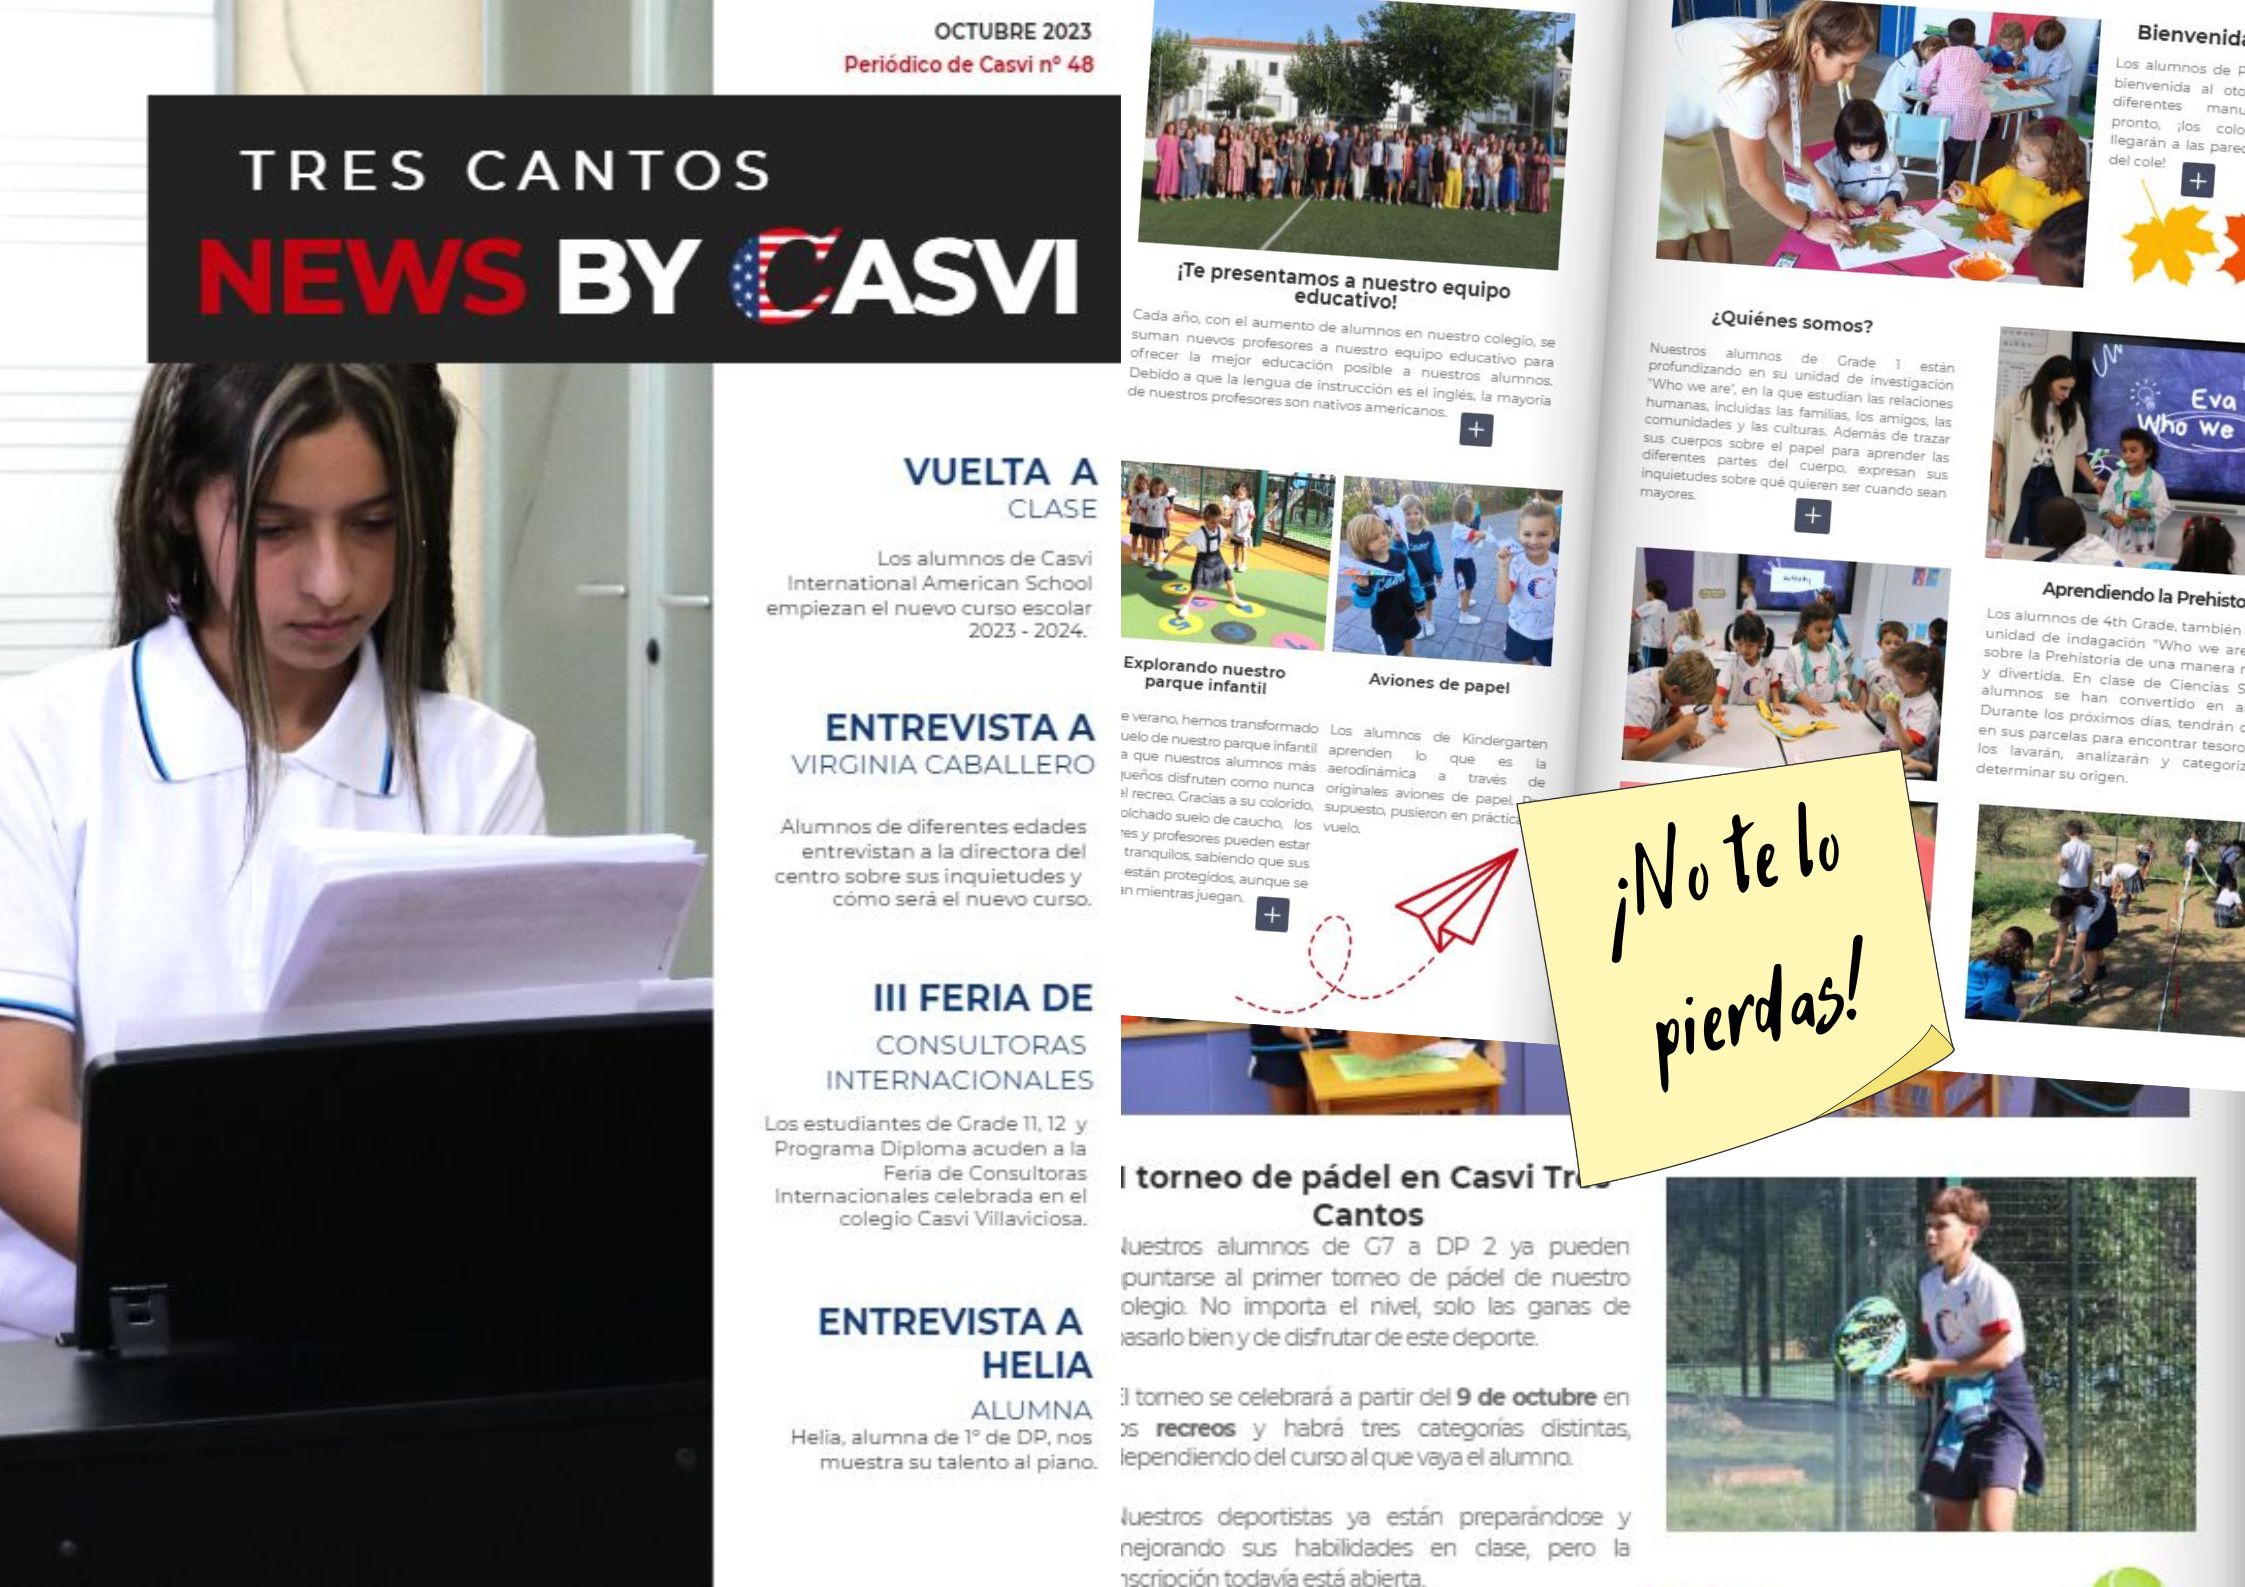 News by Casvi. Portada de la revista mensual del colegio Casvi International American School, octubre 2023